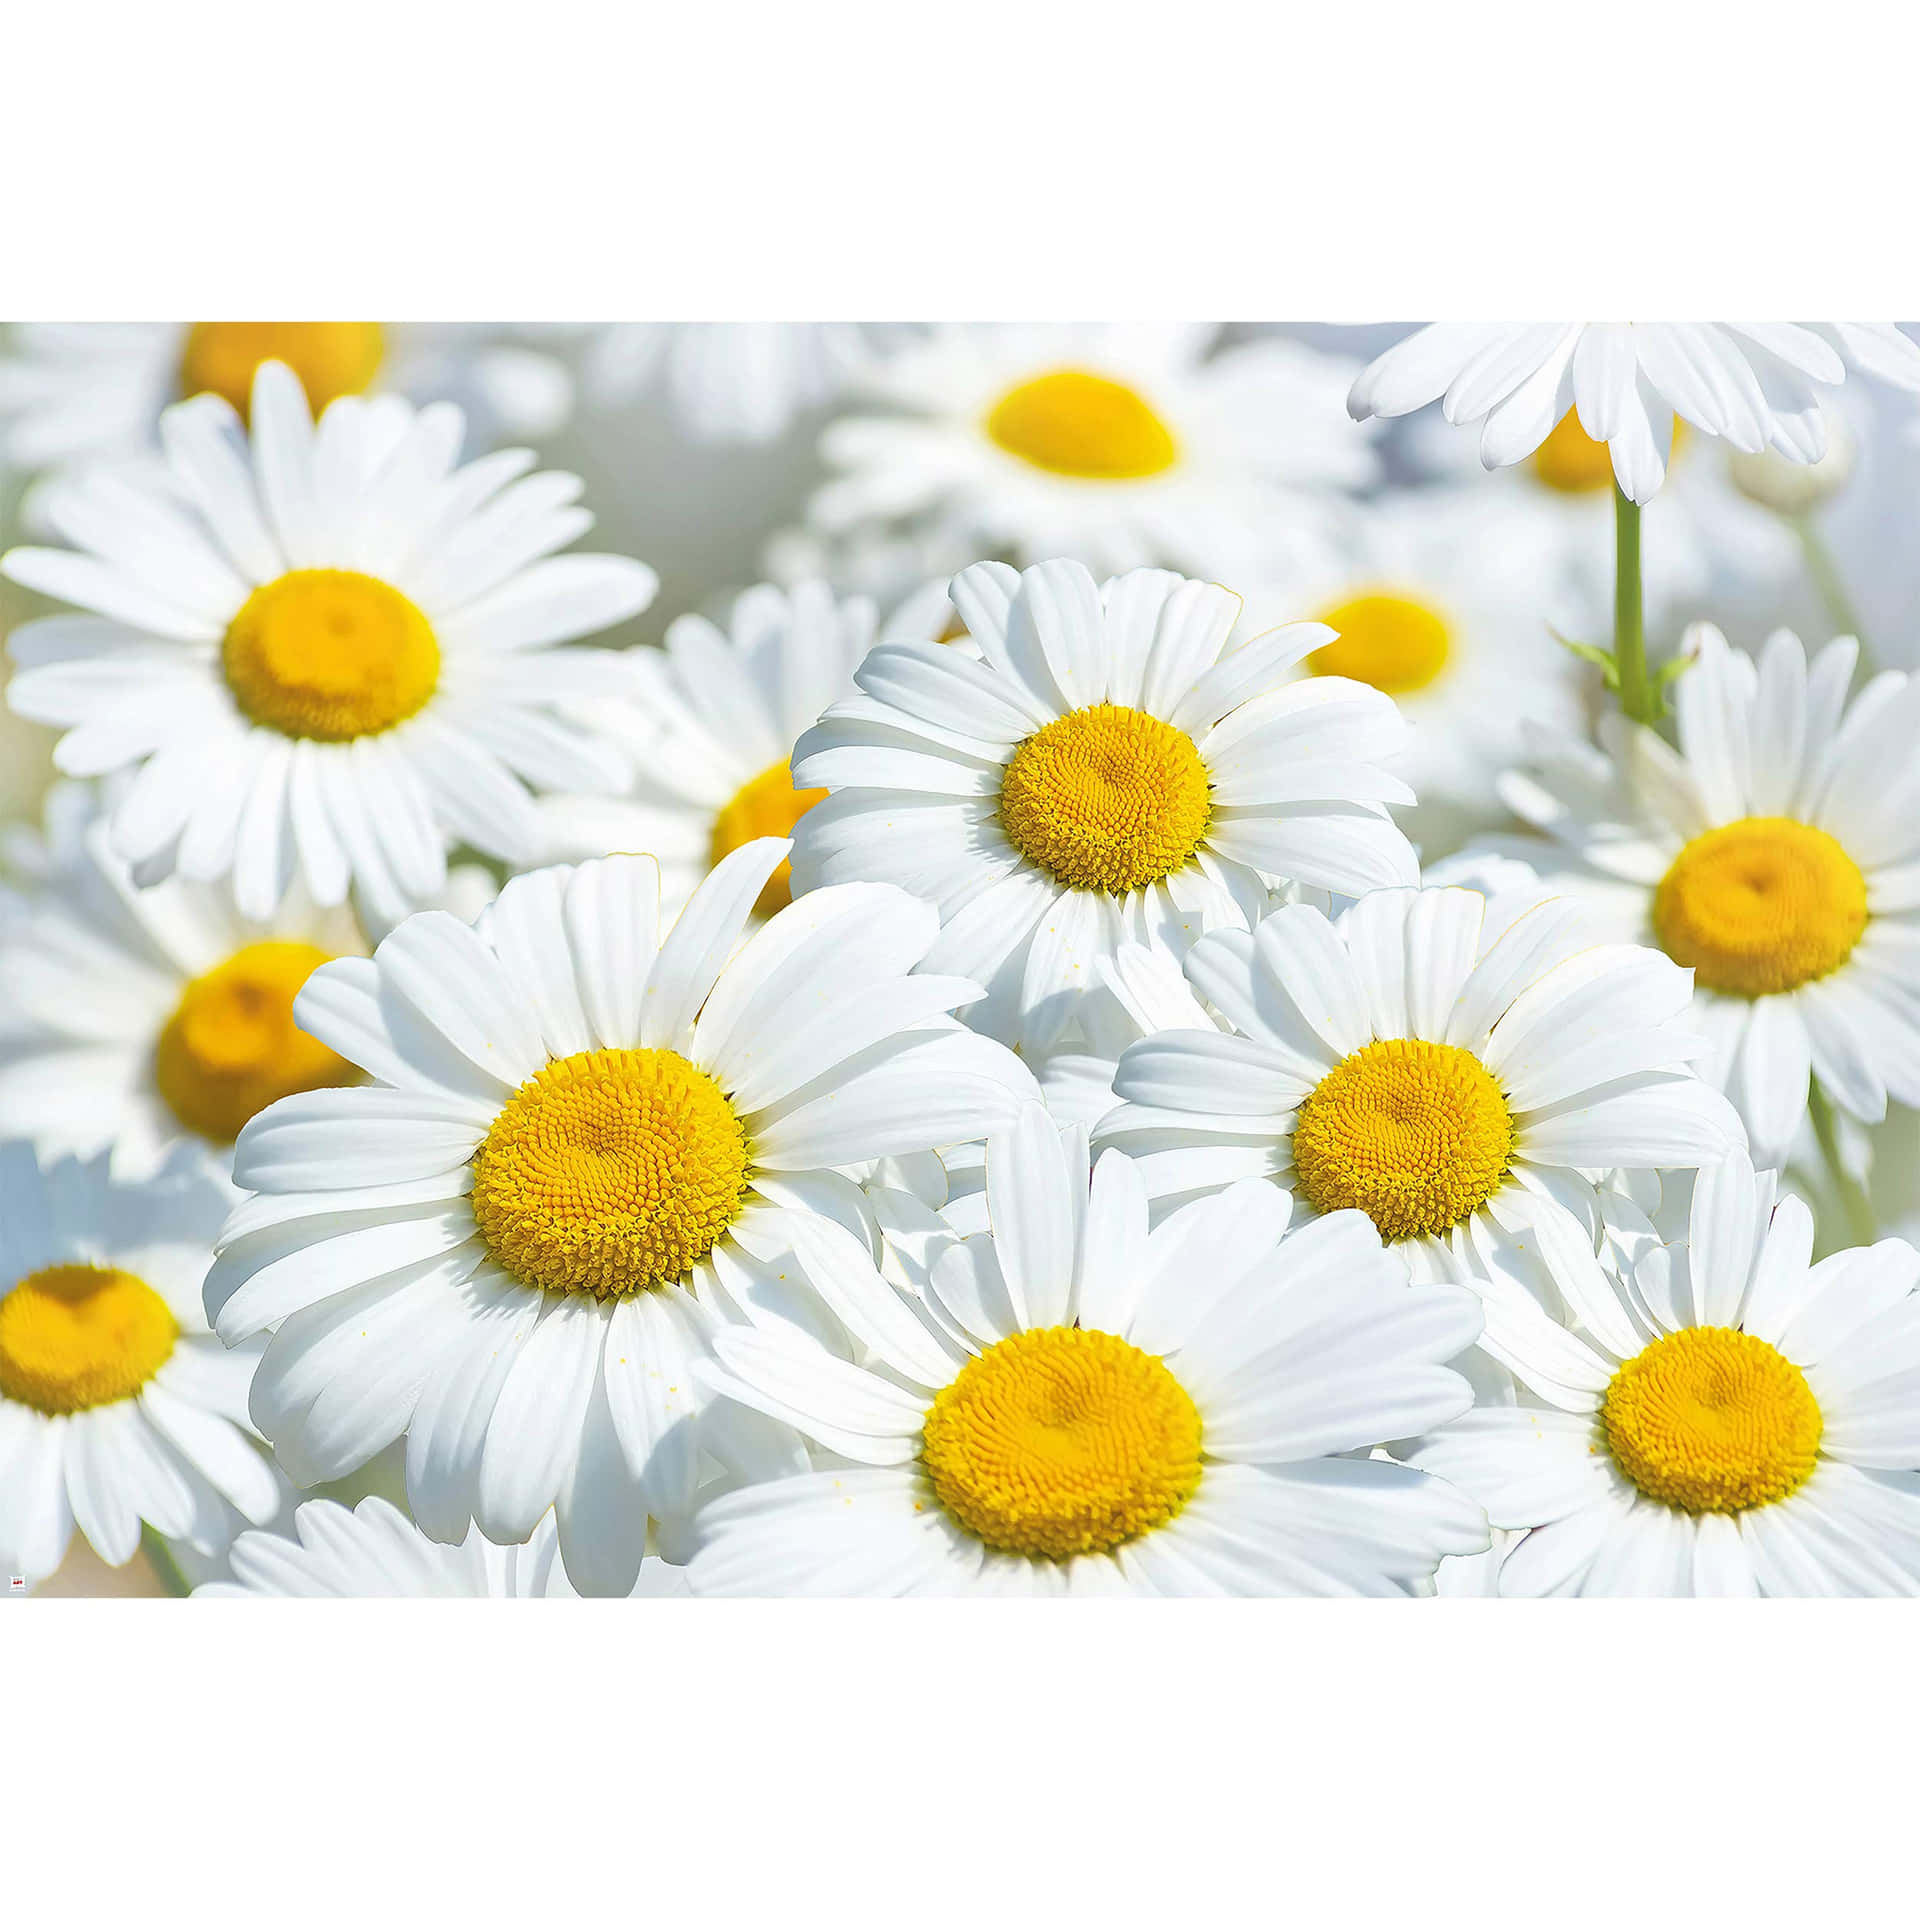 Cute Daisy Flowers Meadow Digital Art Wallpaper